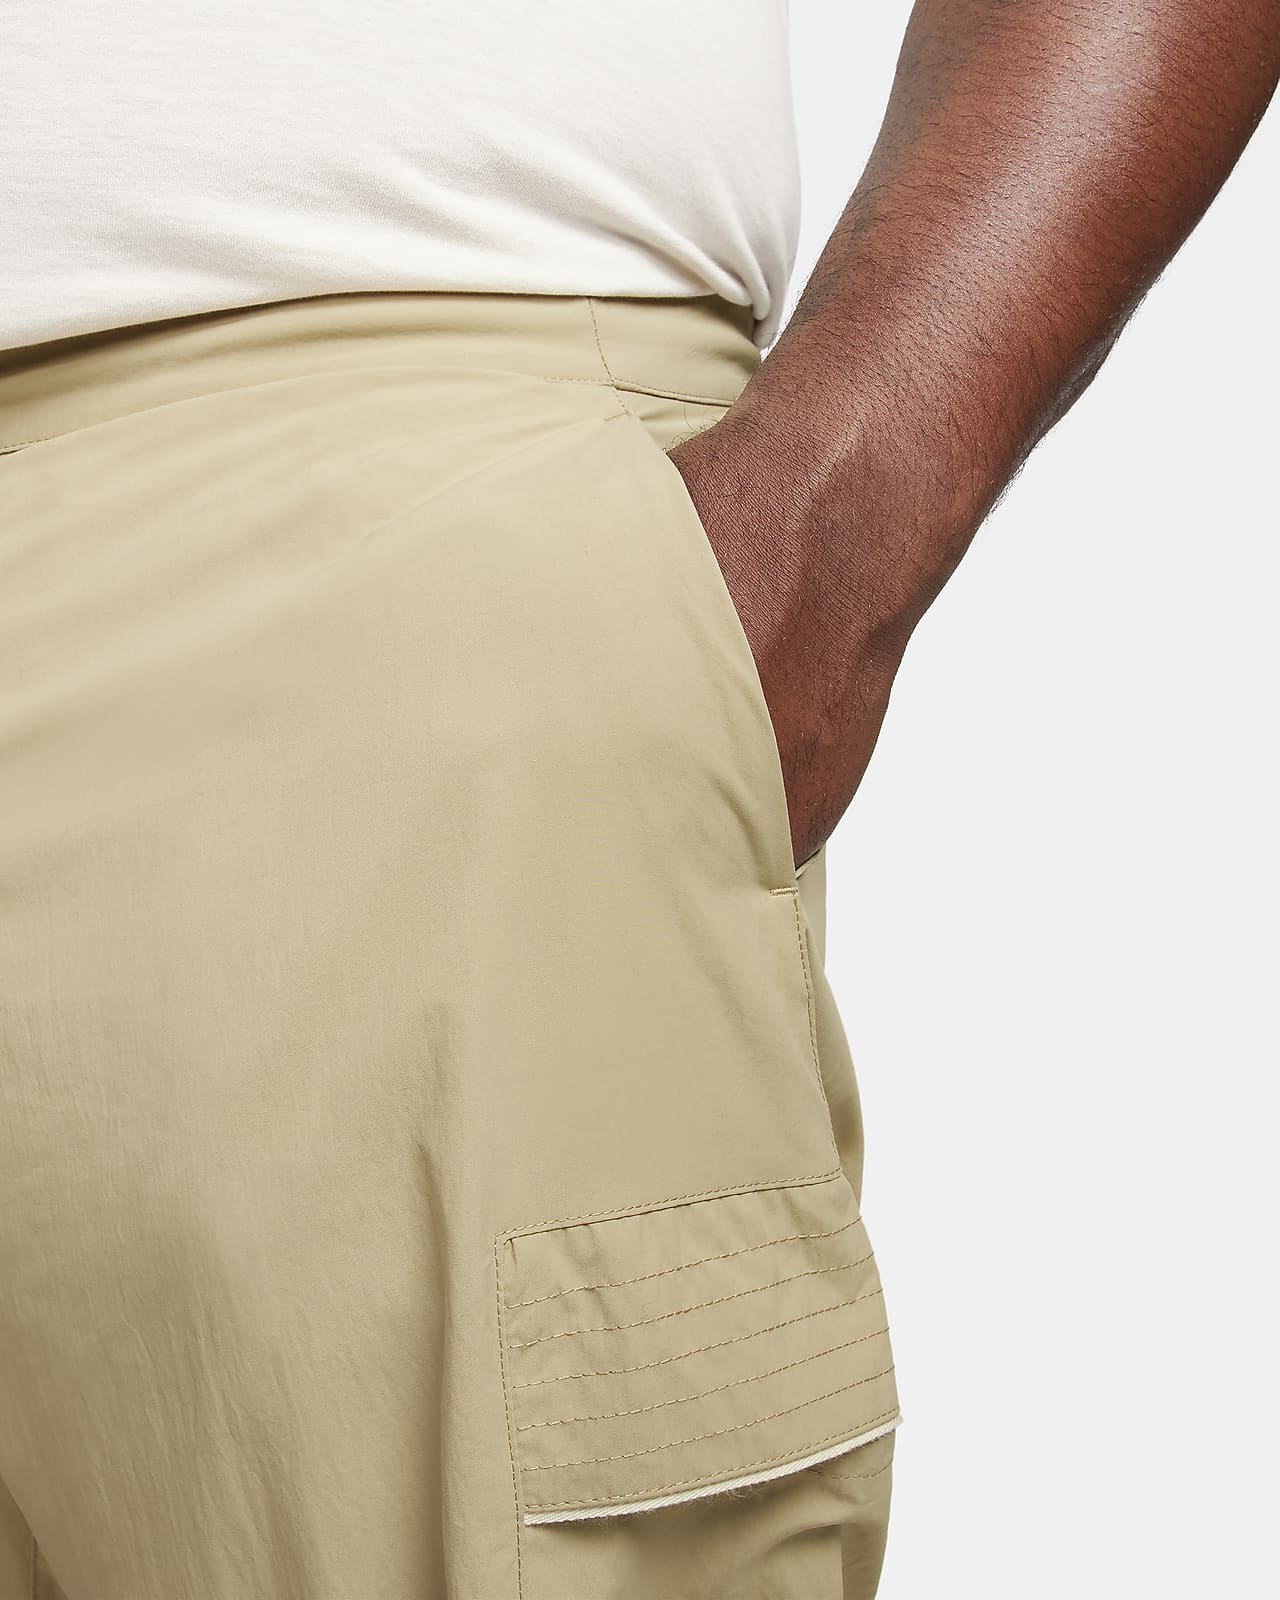 Nike Sportswear Style Essentials Men\'s Utility Pants.